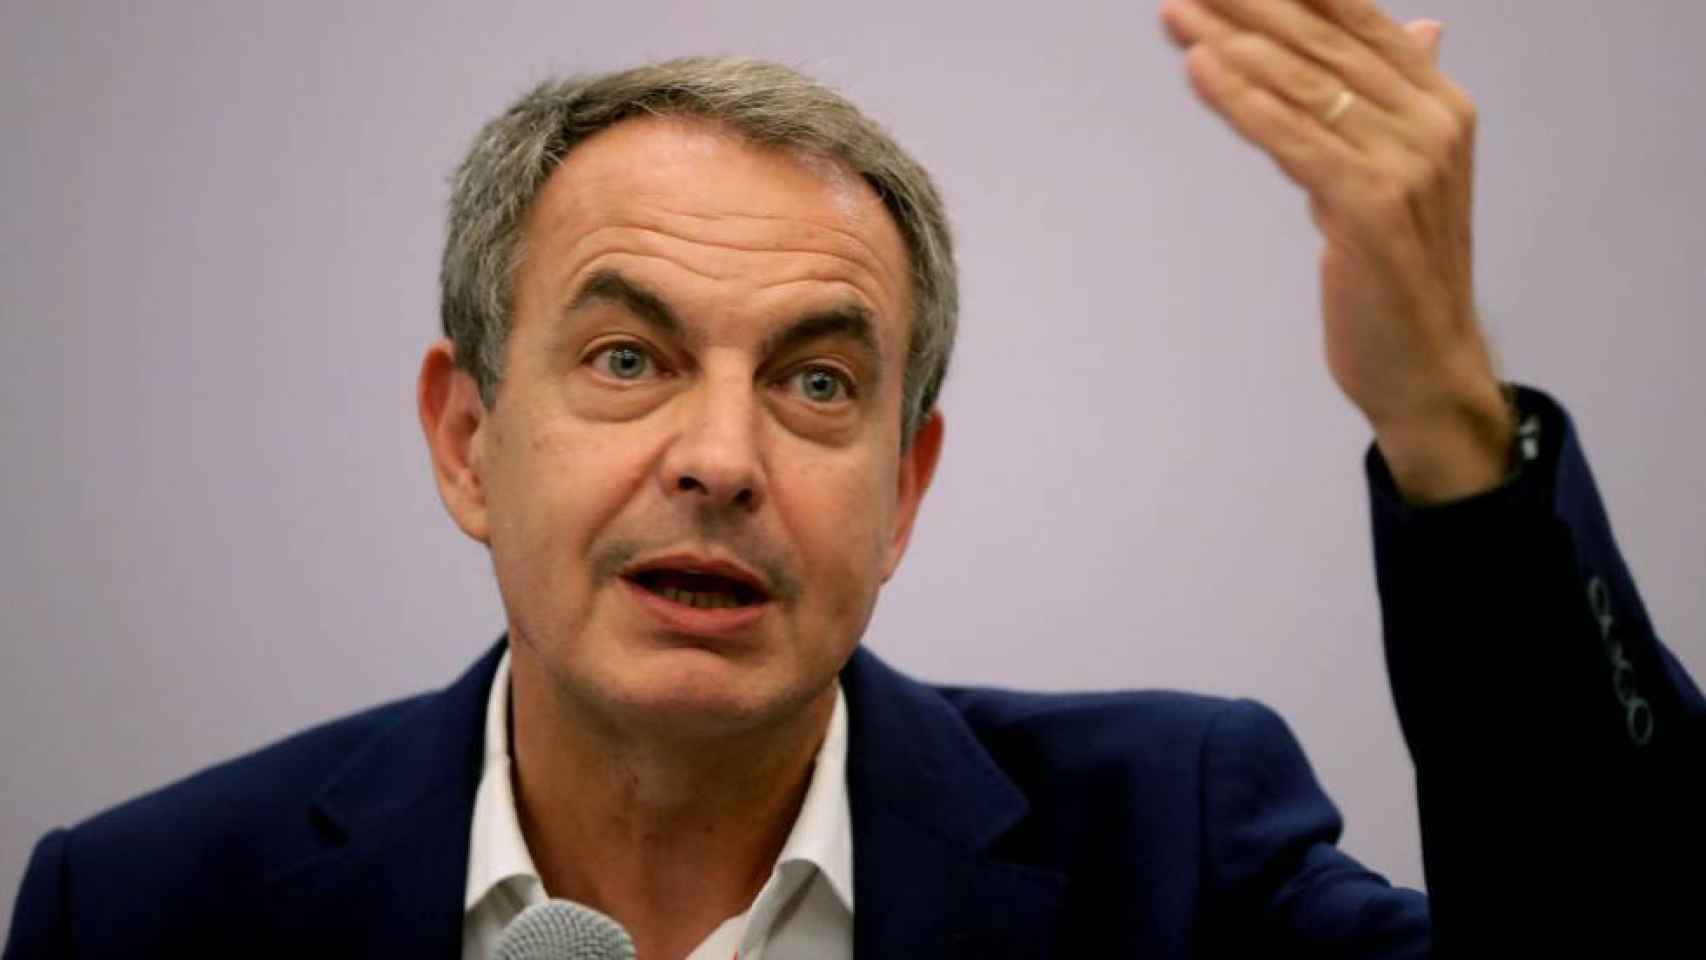 El expresidente del Gobierno, José Luis Rodríguez Zapatero.